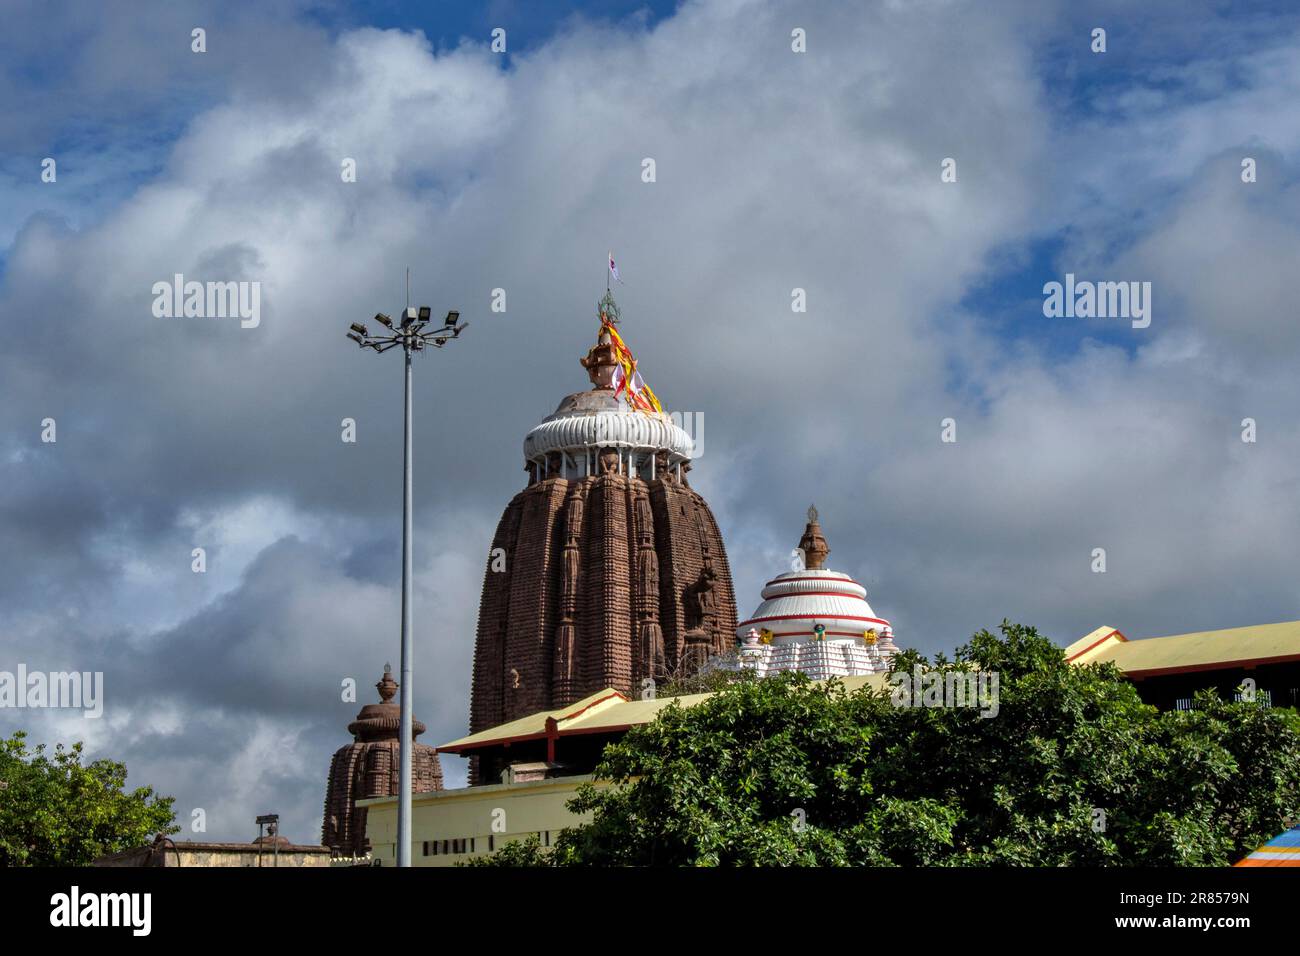 Sree Mandir(Jagannath temple) puri odisha india Stock Photo